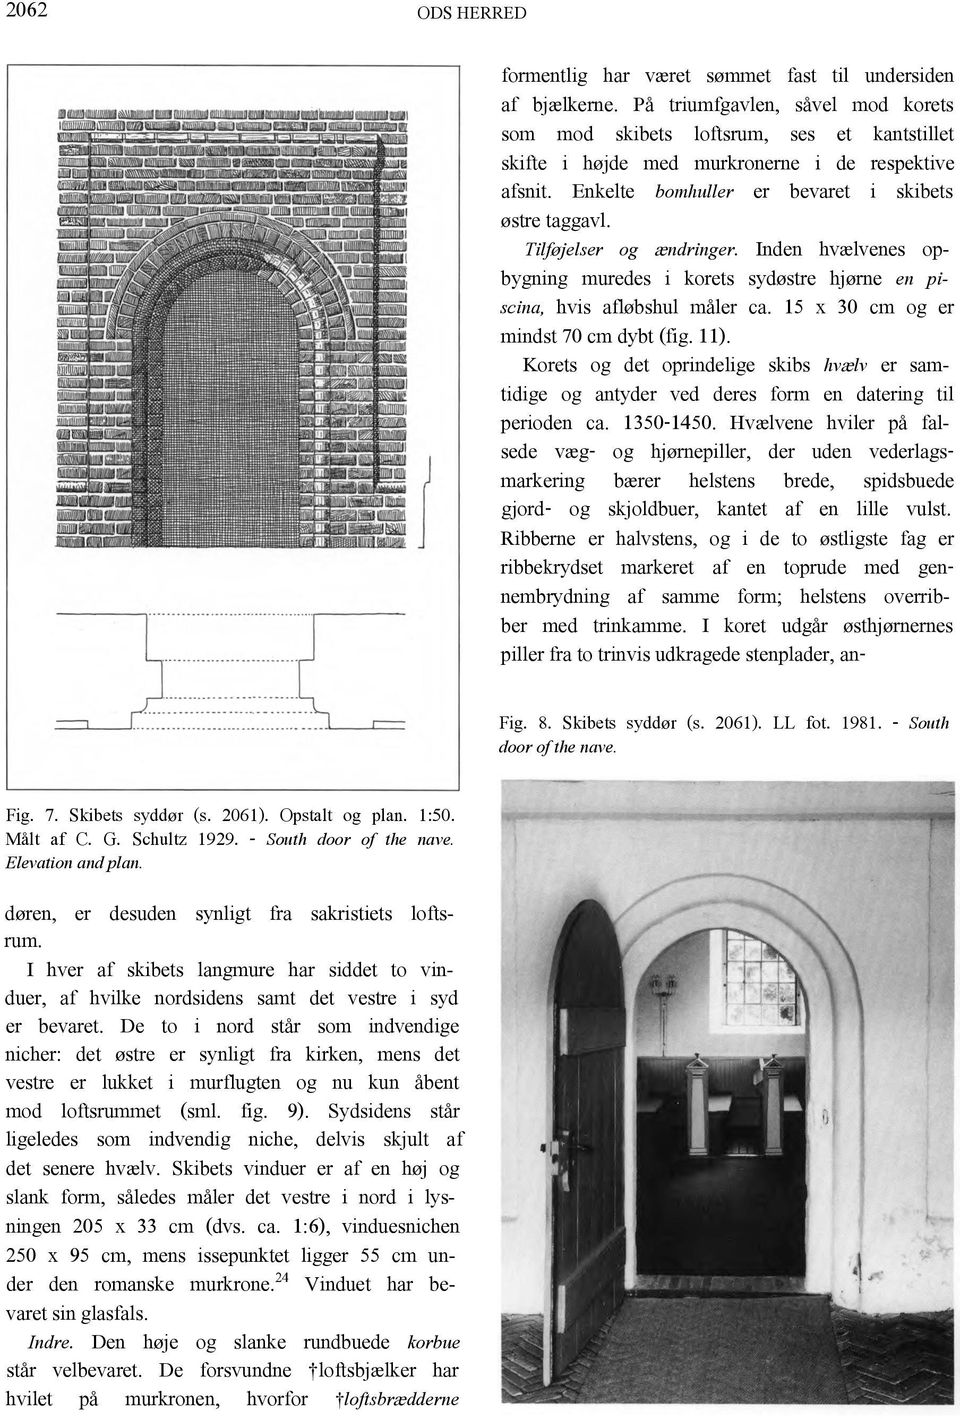 De to i nord står som indvendige nicher: det østre er synligt fra kirken, mens det vestre er lukket i murflugten og nu kun åbent mod loftsrummet (sml. fig. 9).